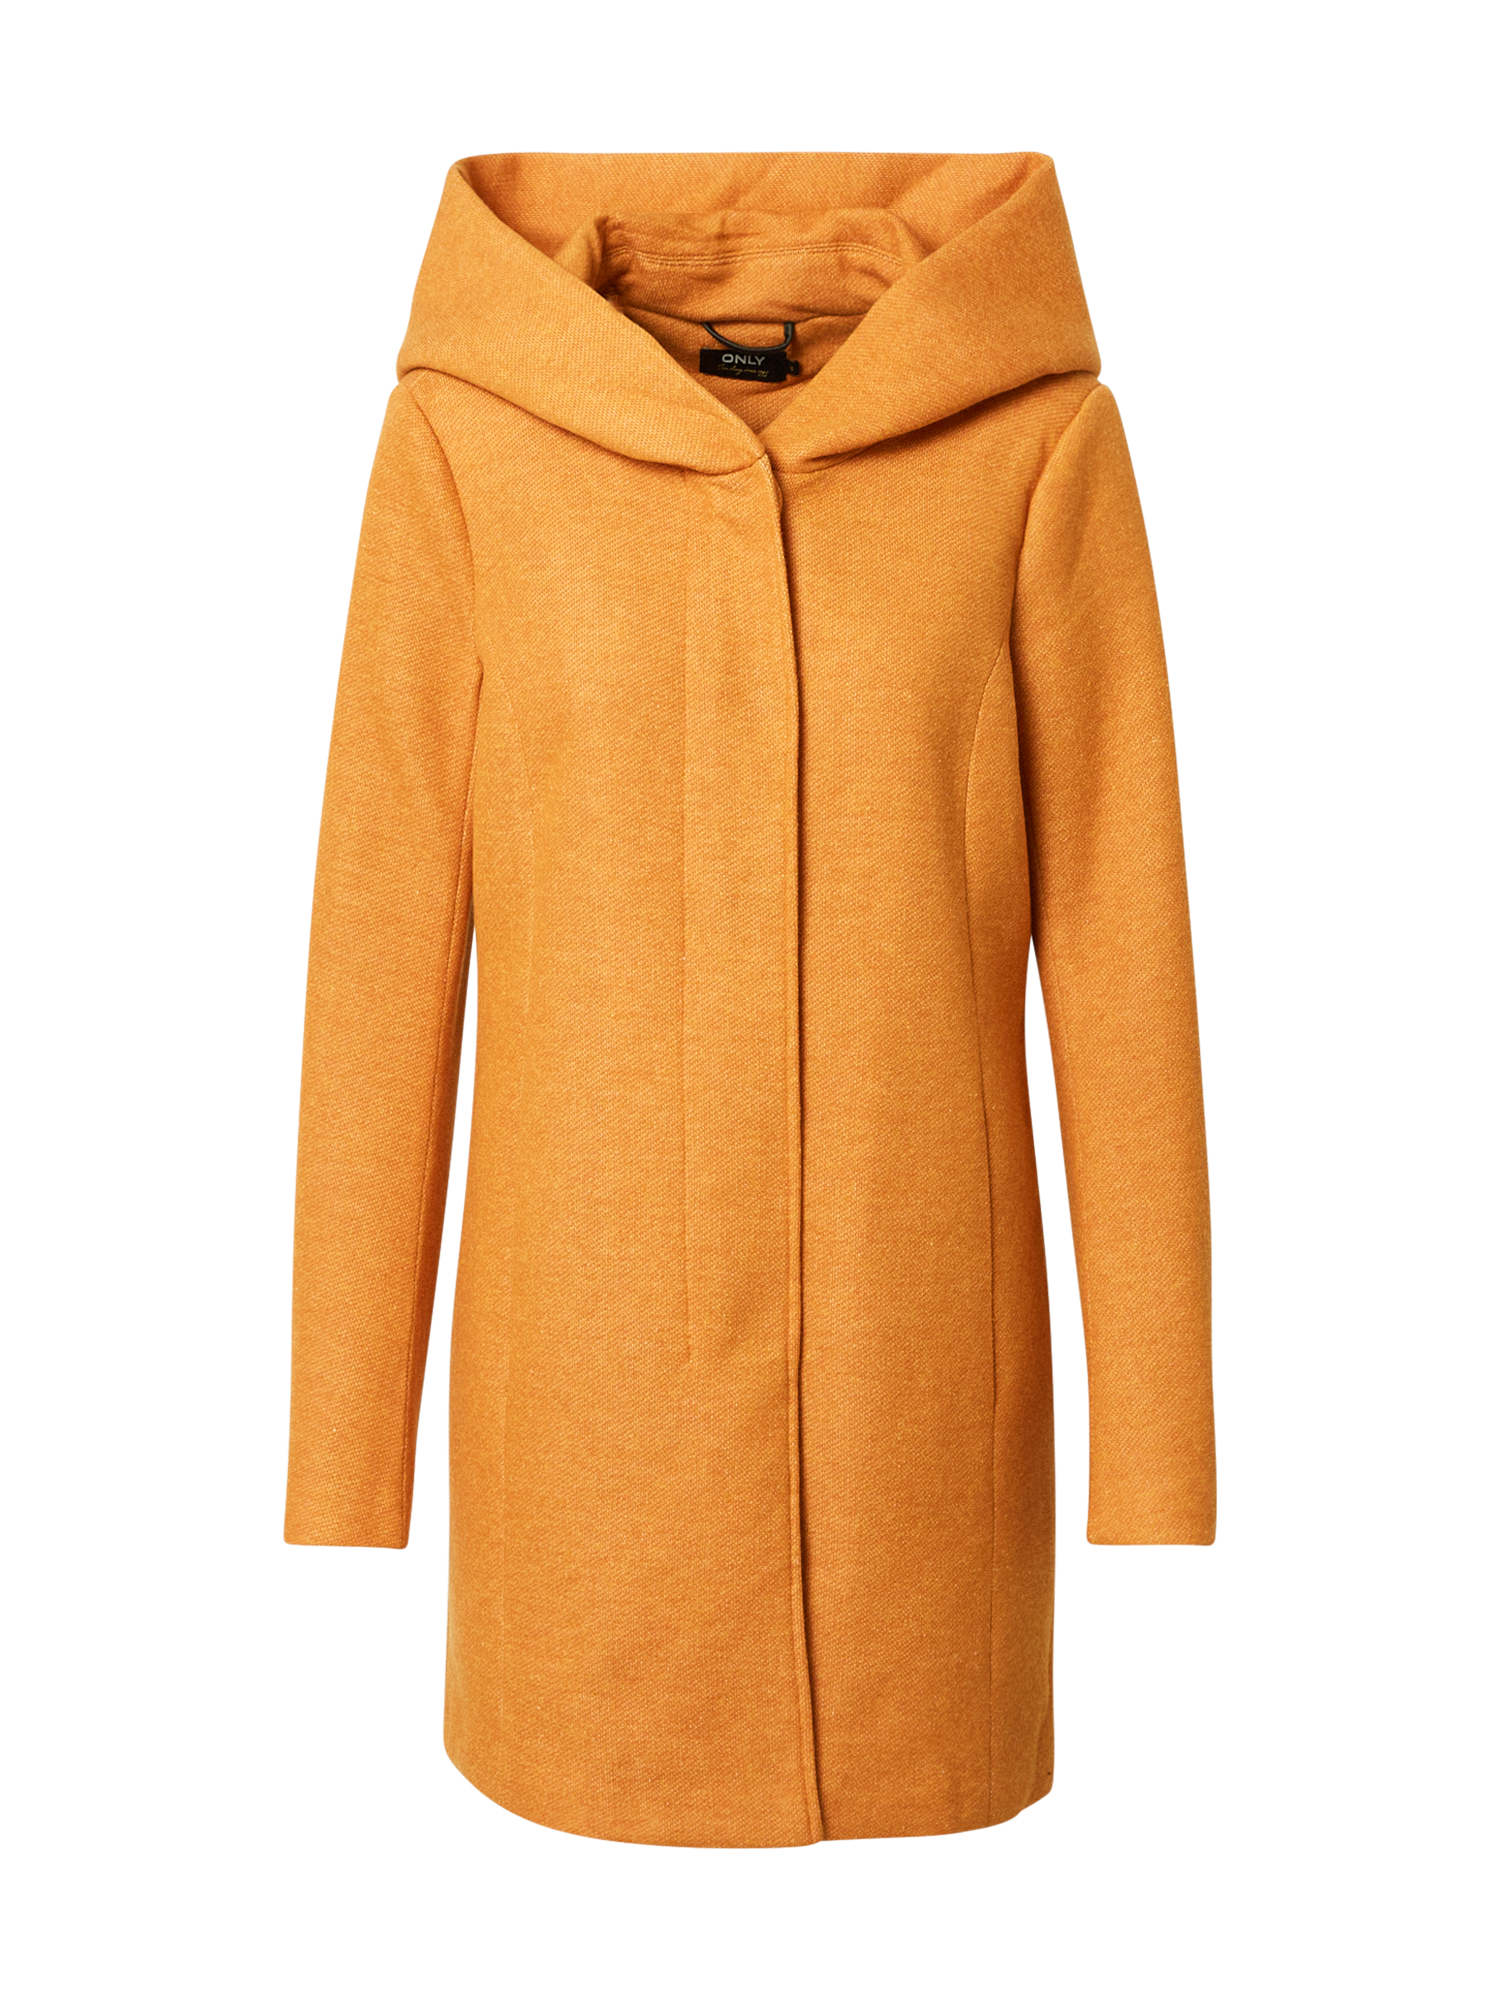 Odzież mc4qH ONLY Płaszcz przejściowy SEDONA w kolorze Pomarańczowym 